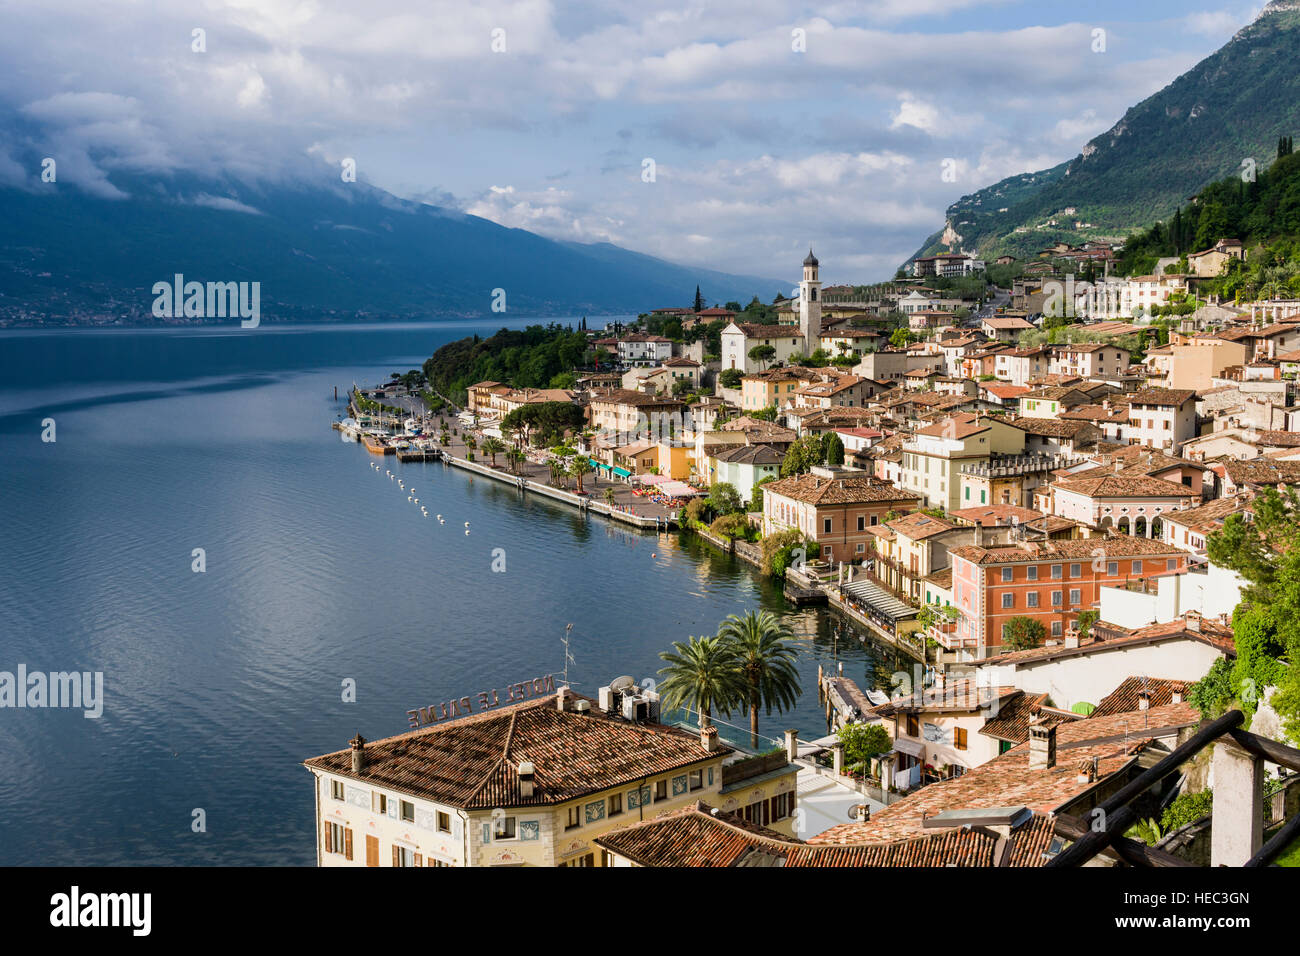 The town Limone is beautifully located at Lake Garda, Lago di Garda Stock Photo